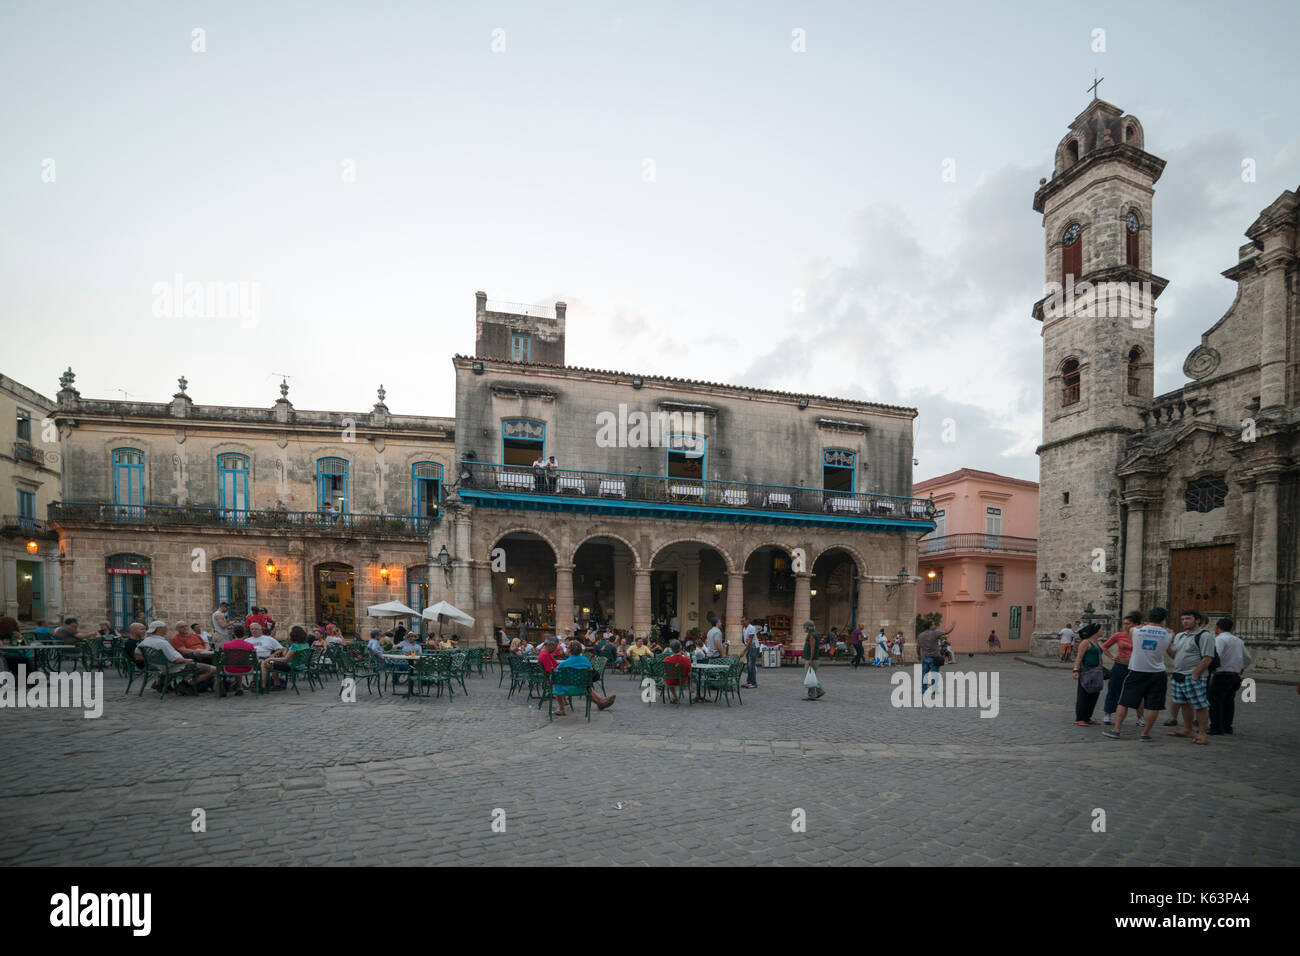 La Havane, 09 janvier, voyage, La Havane, Cuba, La Havane ville . dans l'image : la plaza san cristobal kathedrale havanna. (Photo de ulrich roth) Banque D'Images